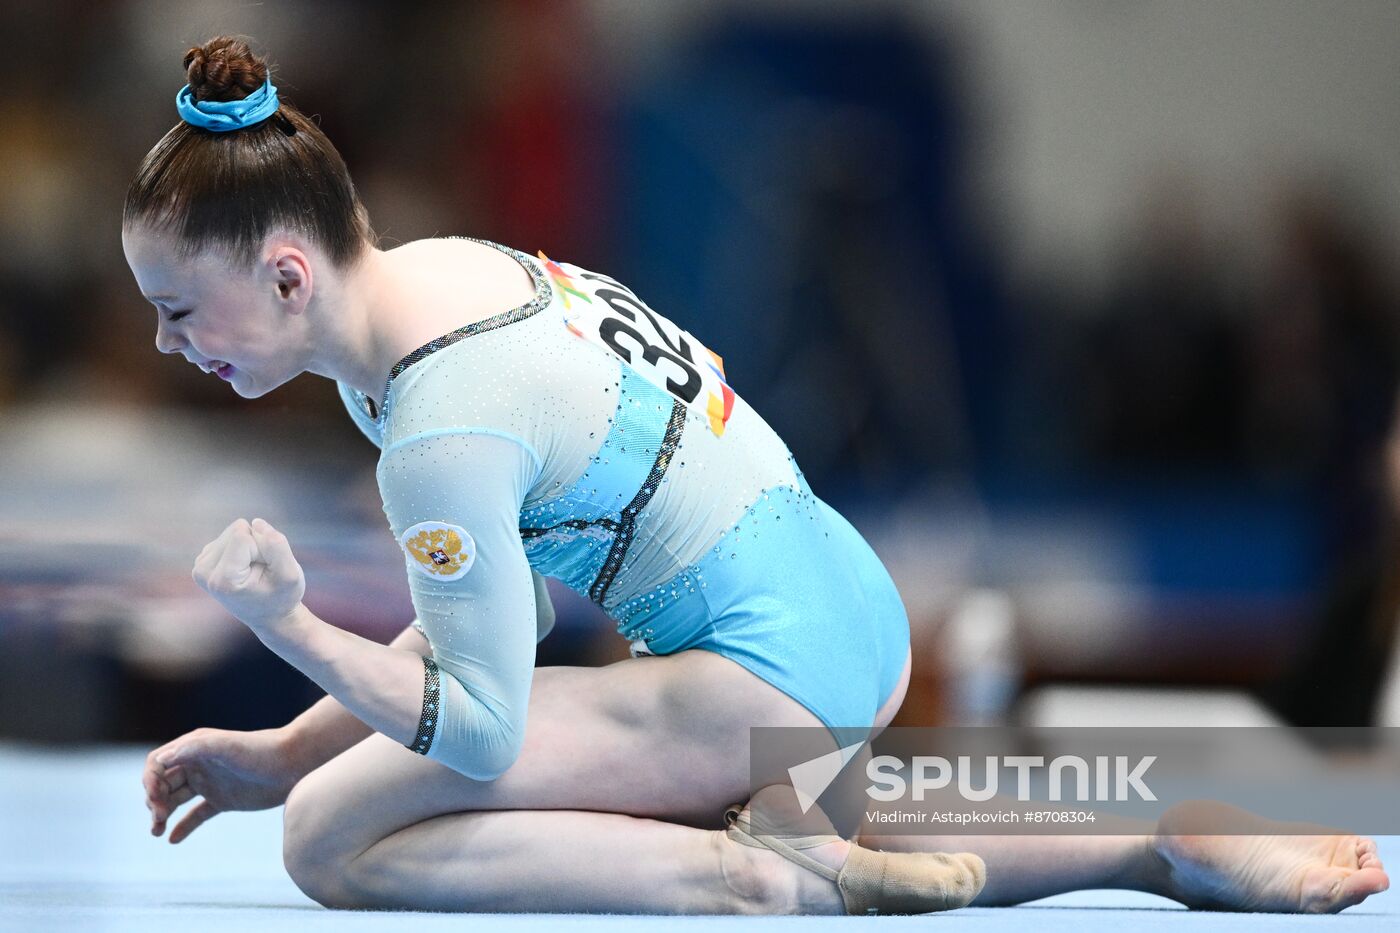 Russia BRICS Sports Games Artistic Gymnastics